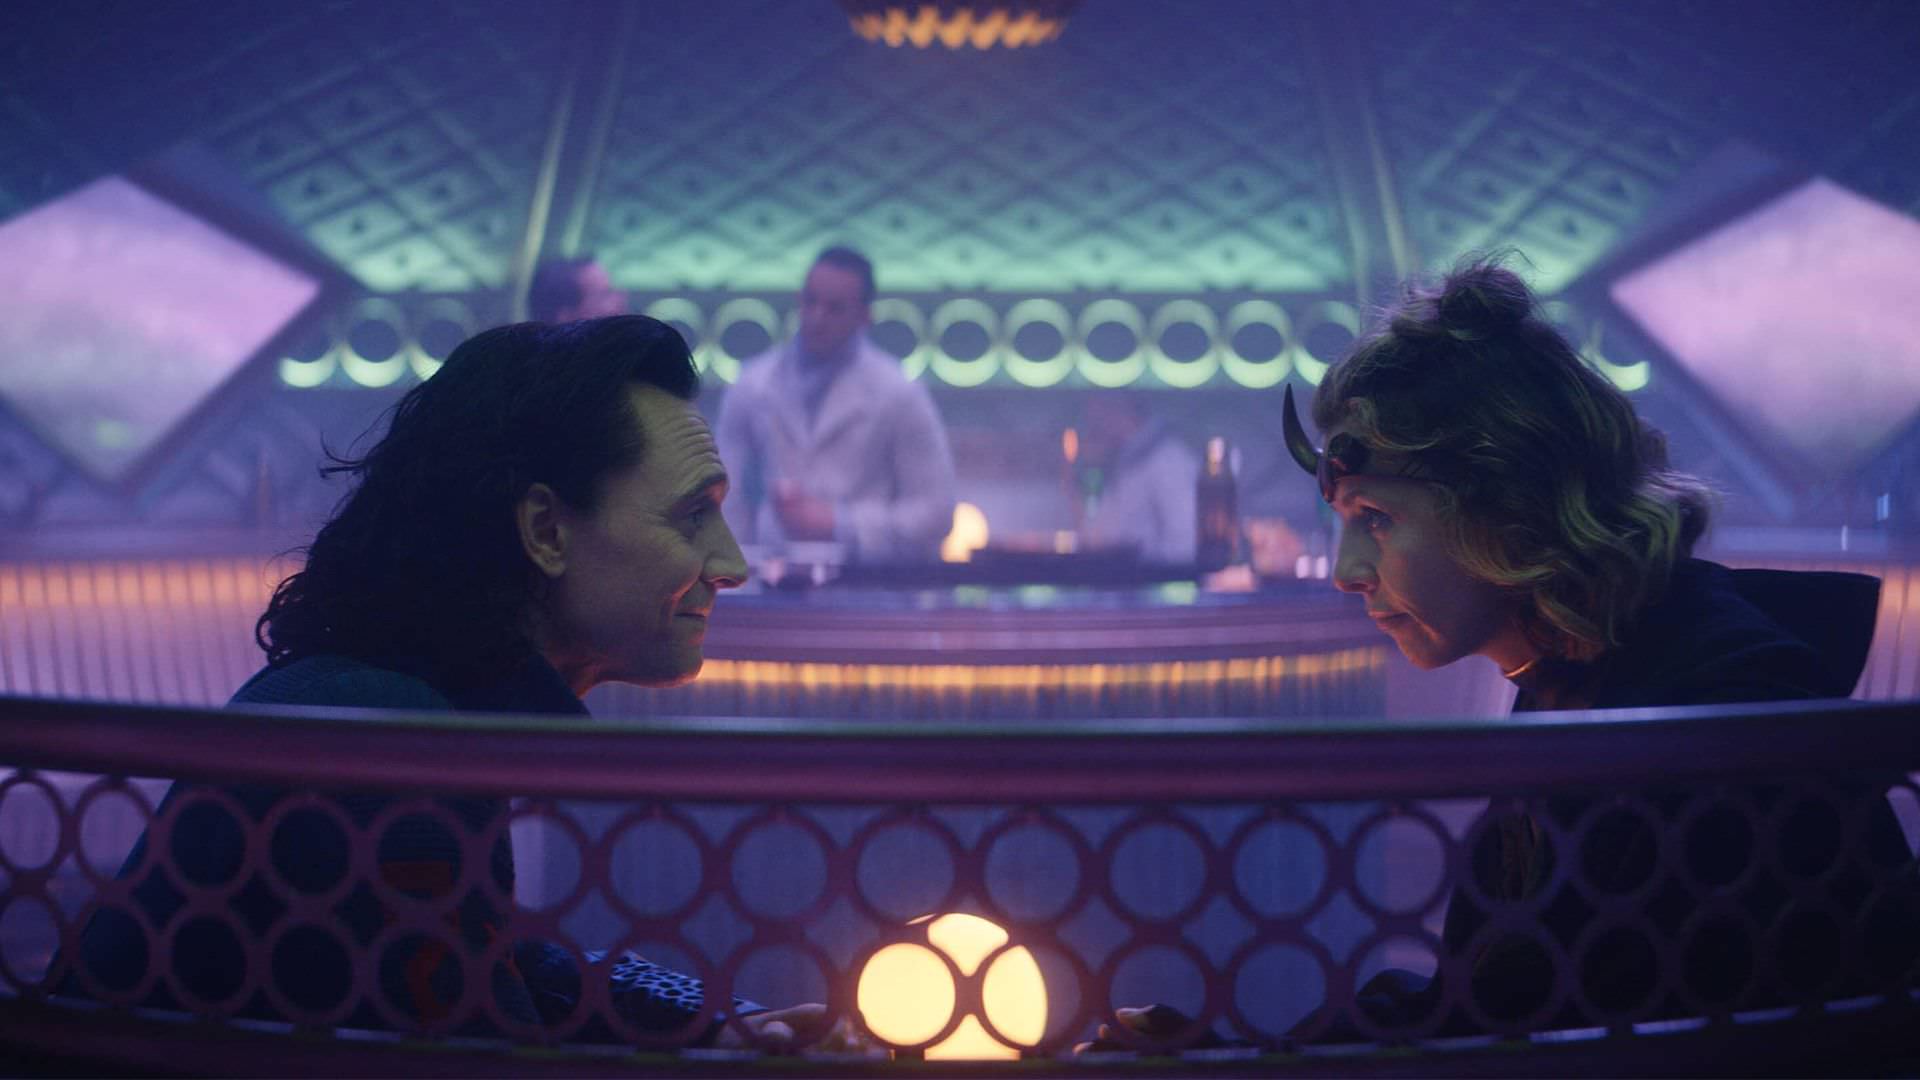 تام هیدلستون در نقش لوکی و سوفیا دی مارتینو در نقش سیلوی در حال صحبت درون قطار در قسمت سوم سریال Loki